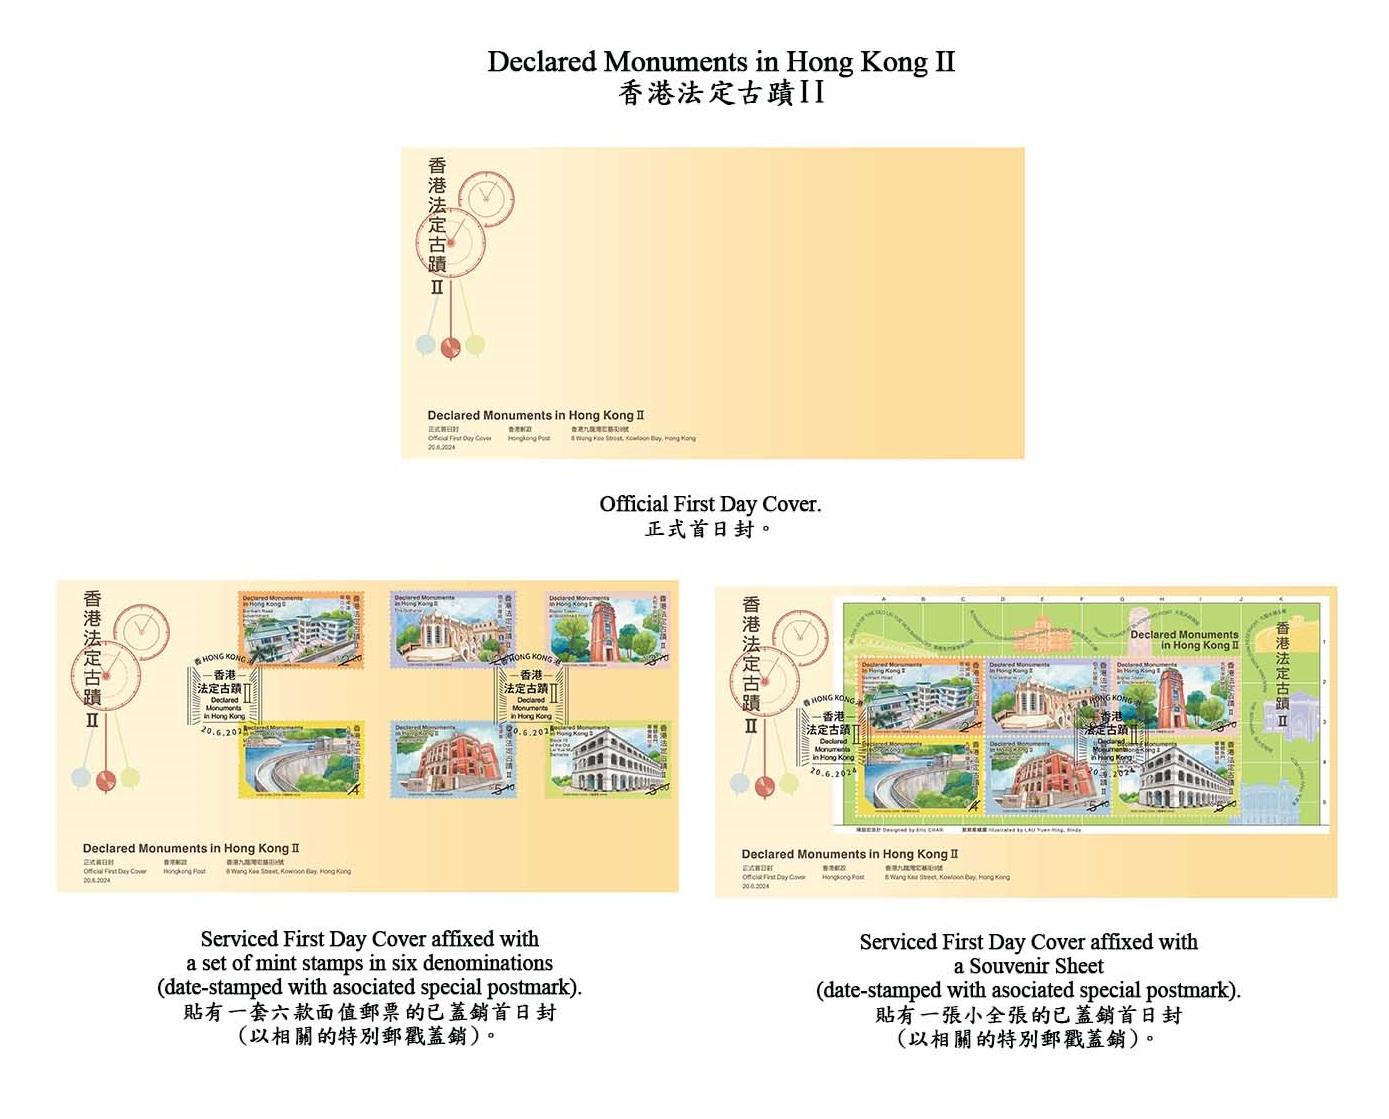 香港邮政六月二十日（星期四）发行以「香港法定古迹II」为题的特别邮票及相关集邮品。图示首日封。
